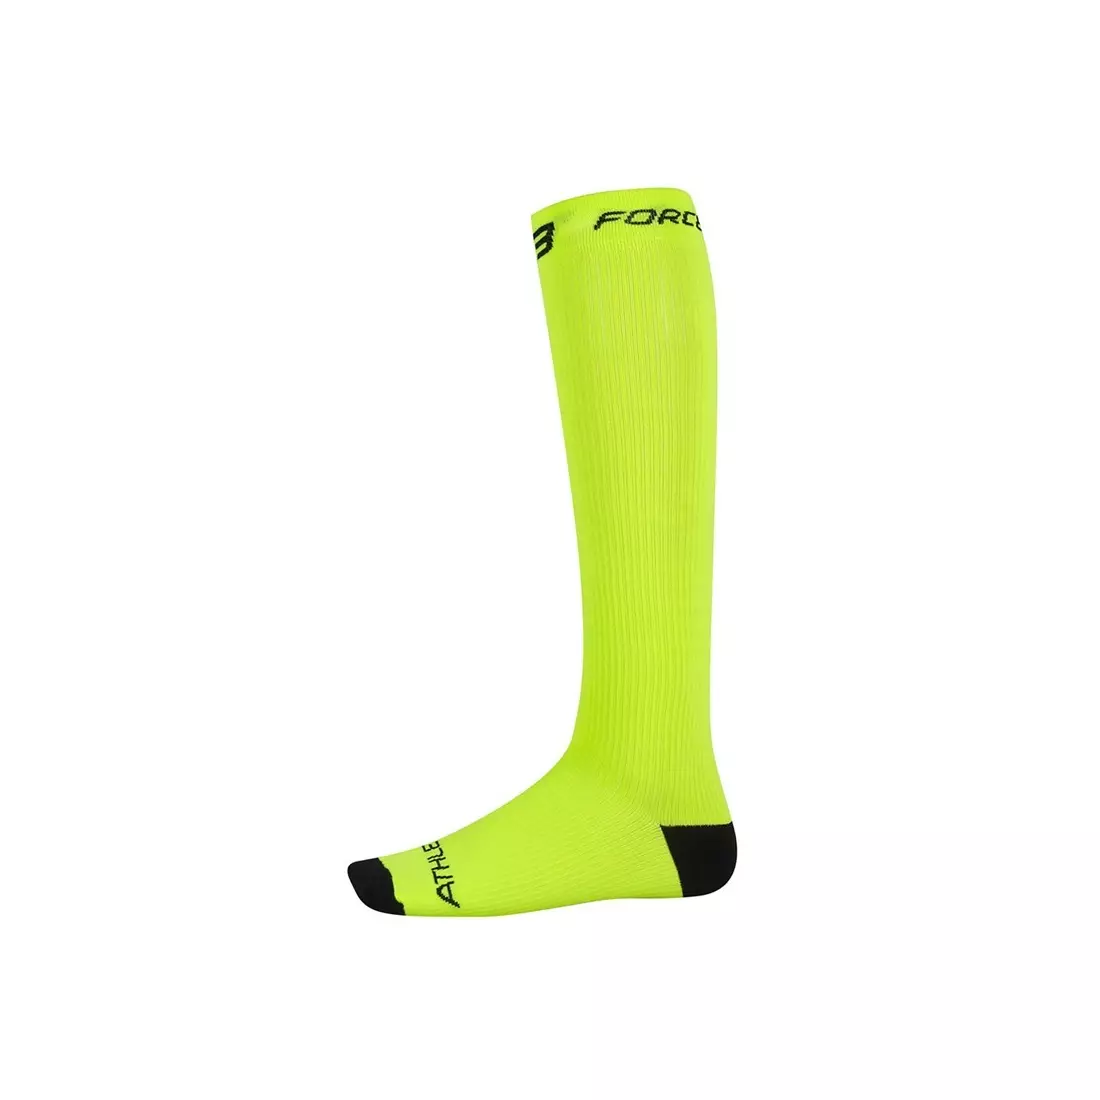 FORCE kompressziós zokni 90103, szín: Fluor